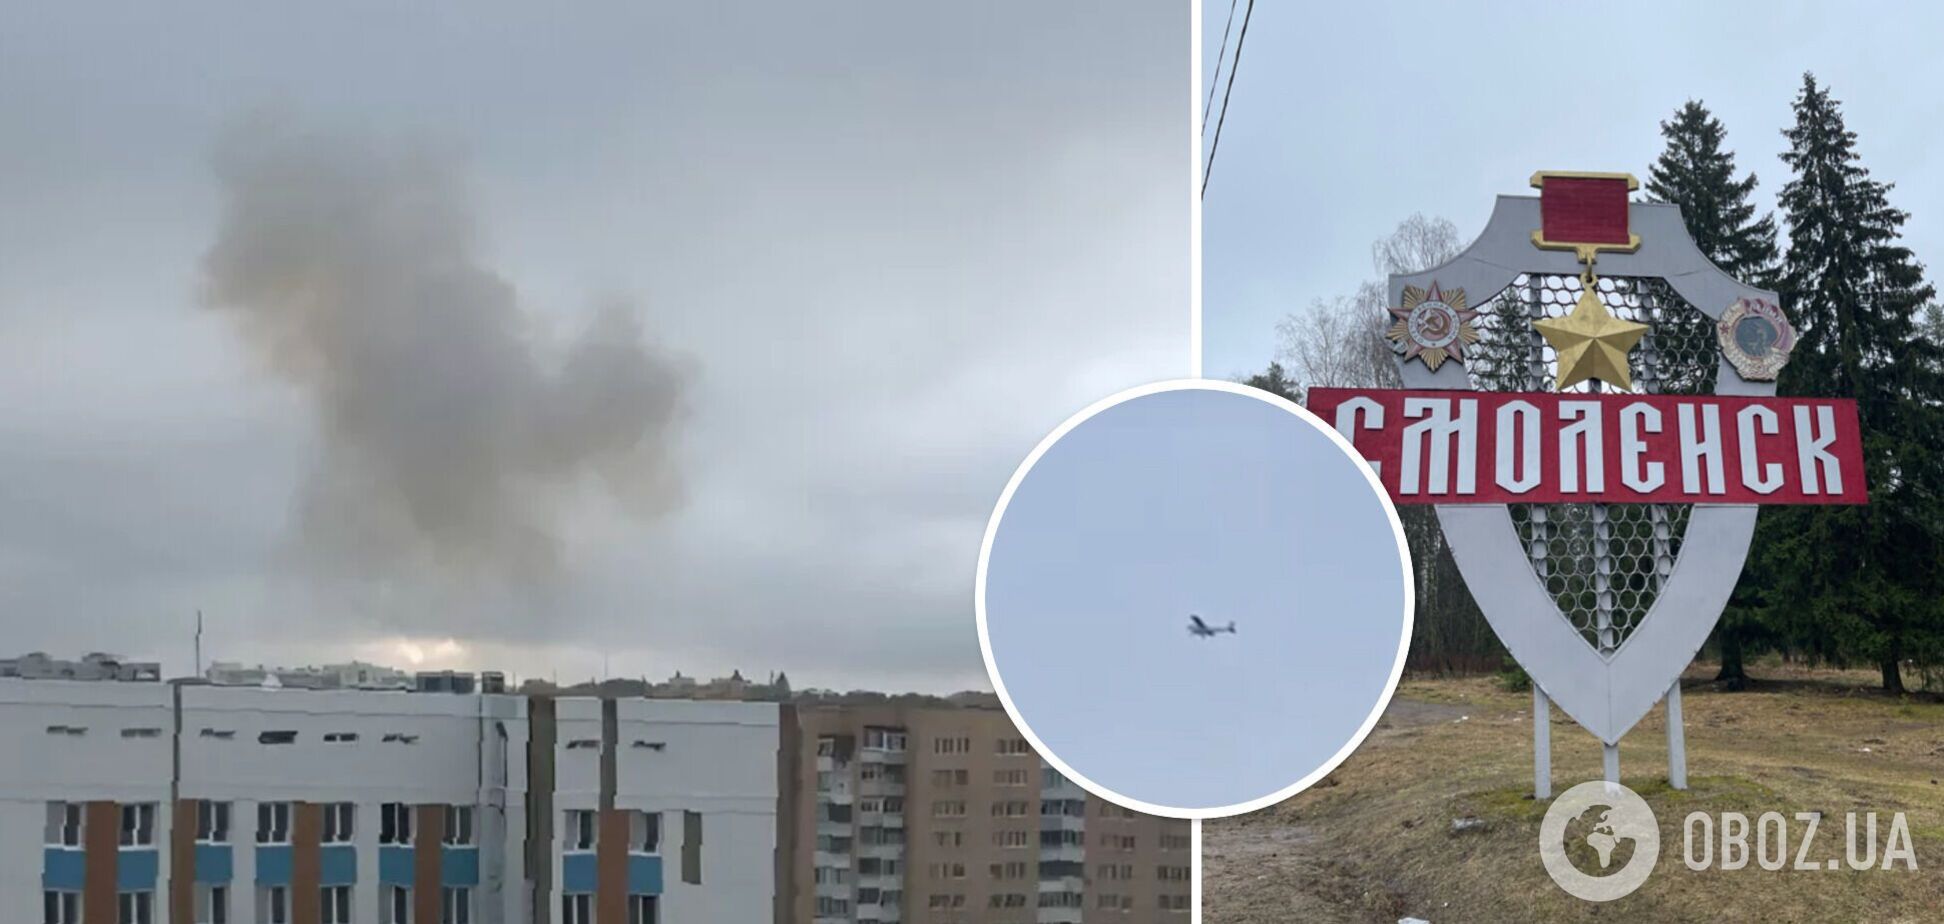 'Аж дом затрясло': в Смоленске пожаловались на взрывы, пожарные понеслись в район авиазавода